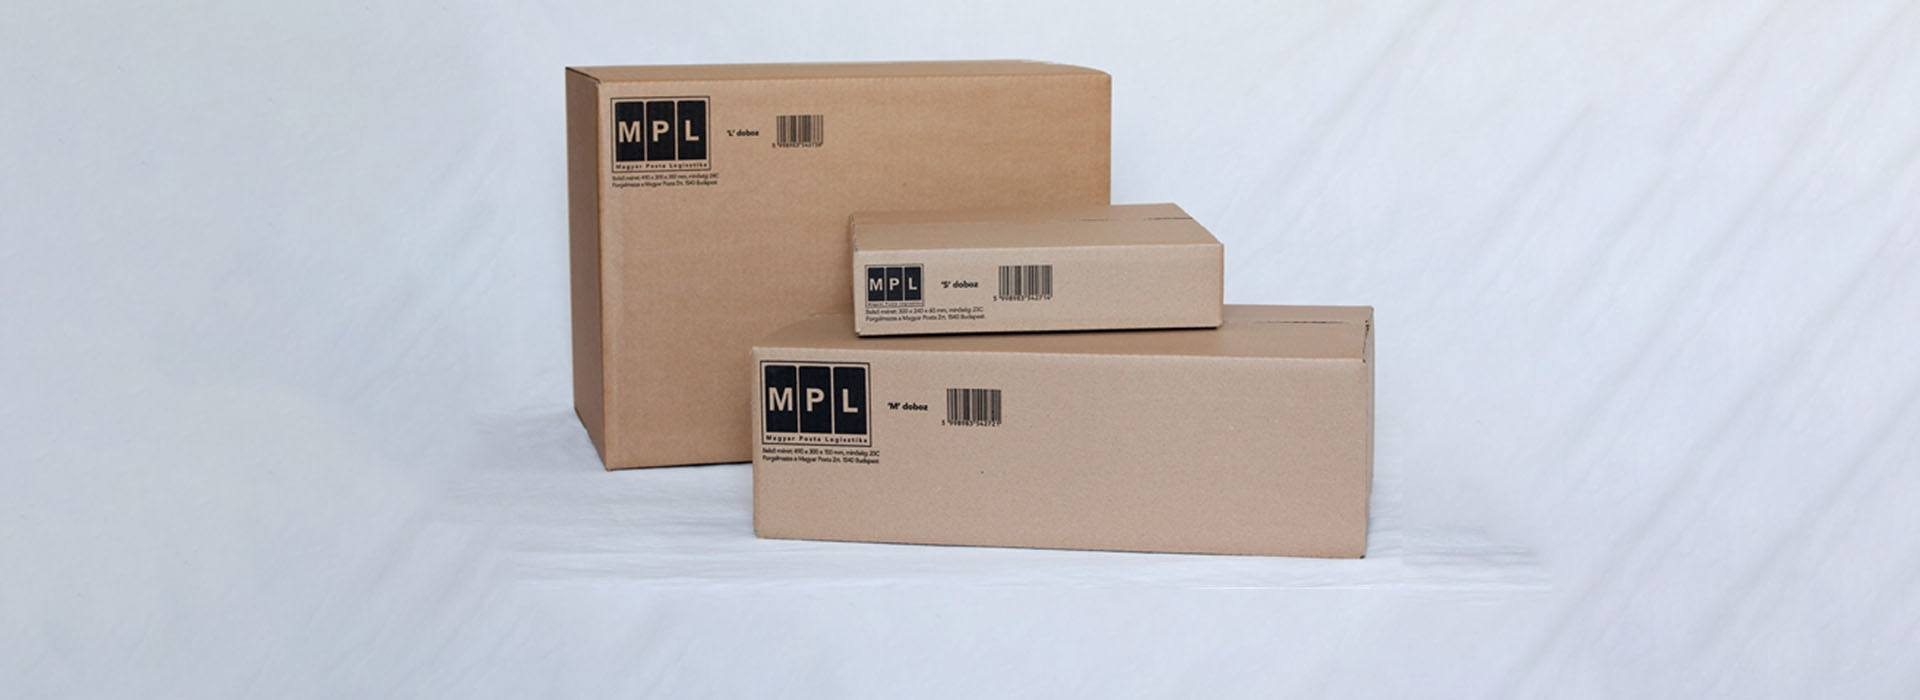 A képen különböző méretű, szabványos MPL felirattal ellátott dobozok láthatóak.